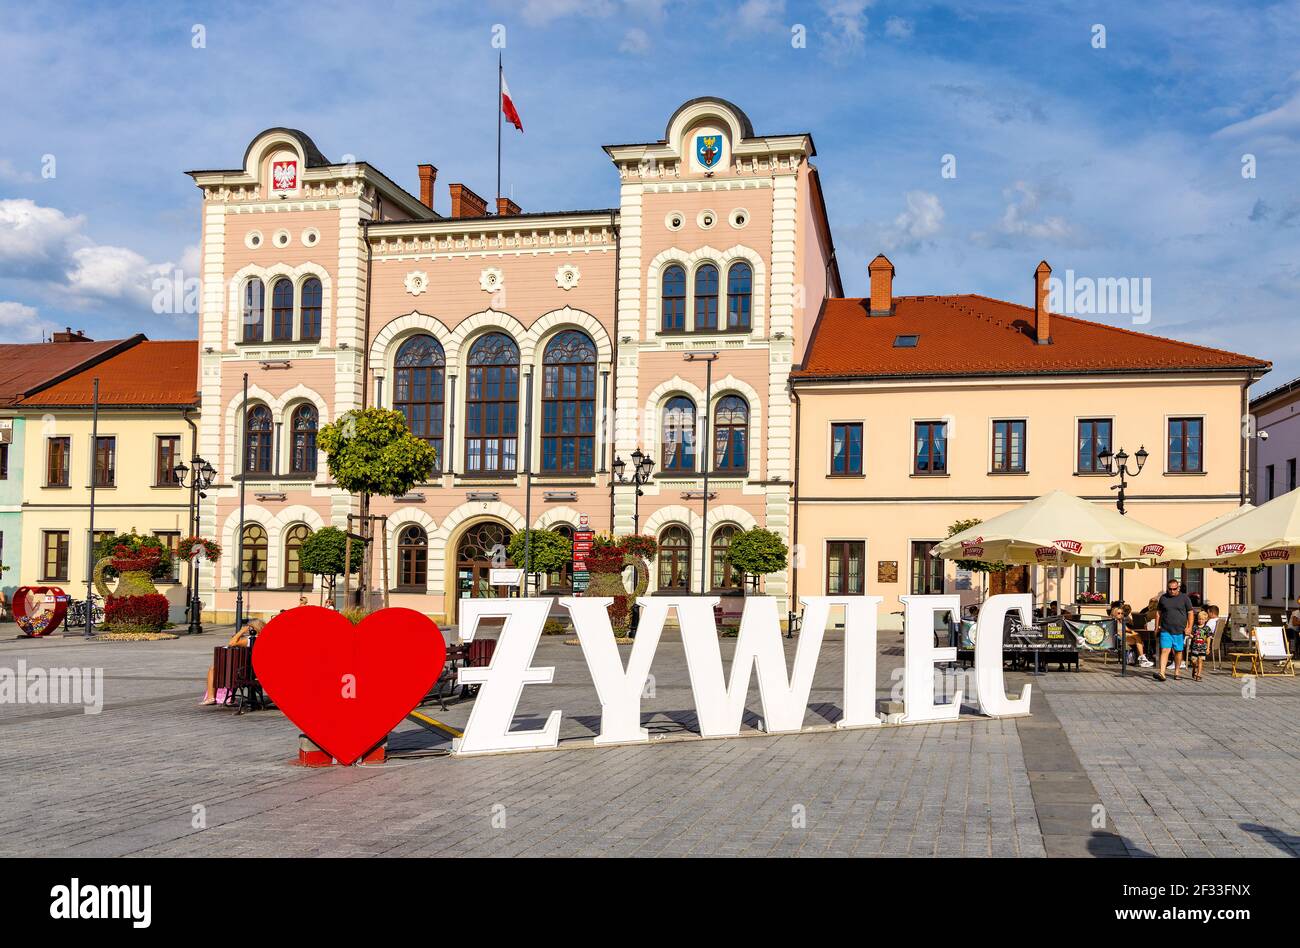 Zywiec, Polen - 30. August 2020: Rathausgebäude mit bunten Stadthäusern und Zywiec-Schild am historischen Marktplatz der Innenstadt Stockfoto